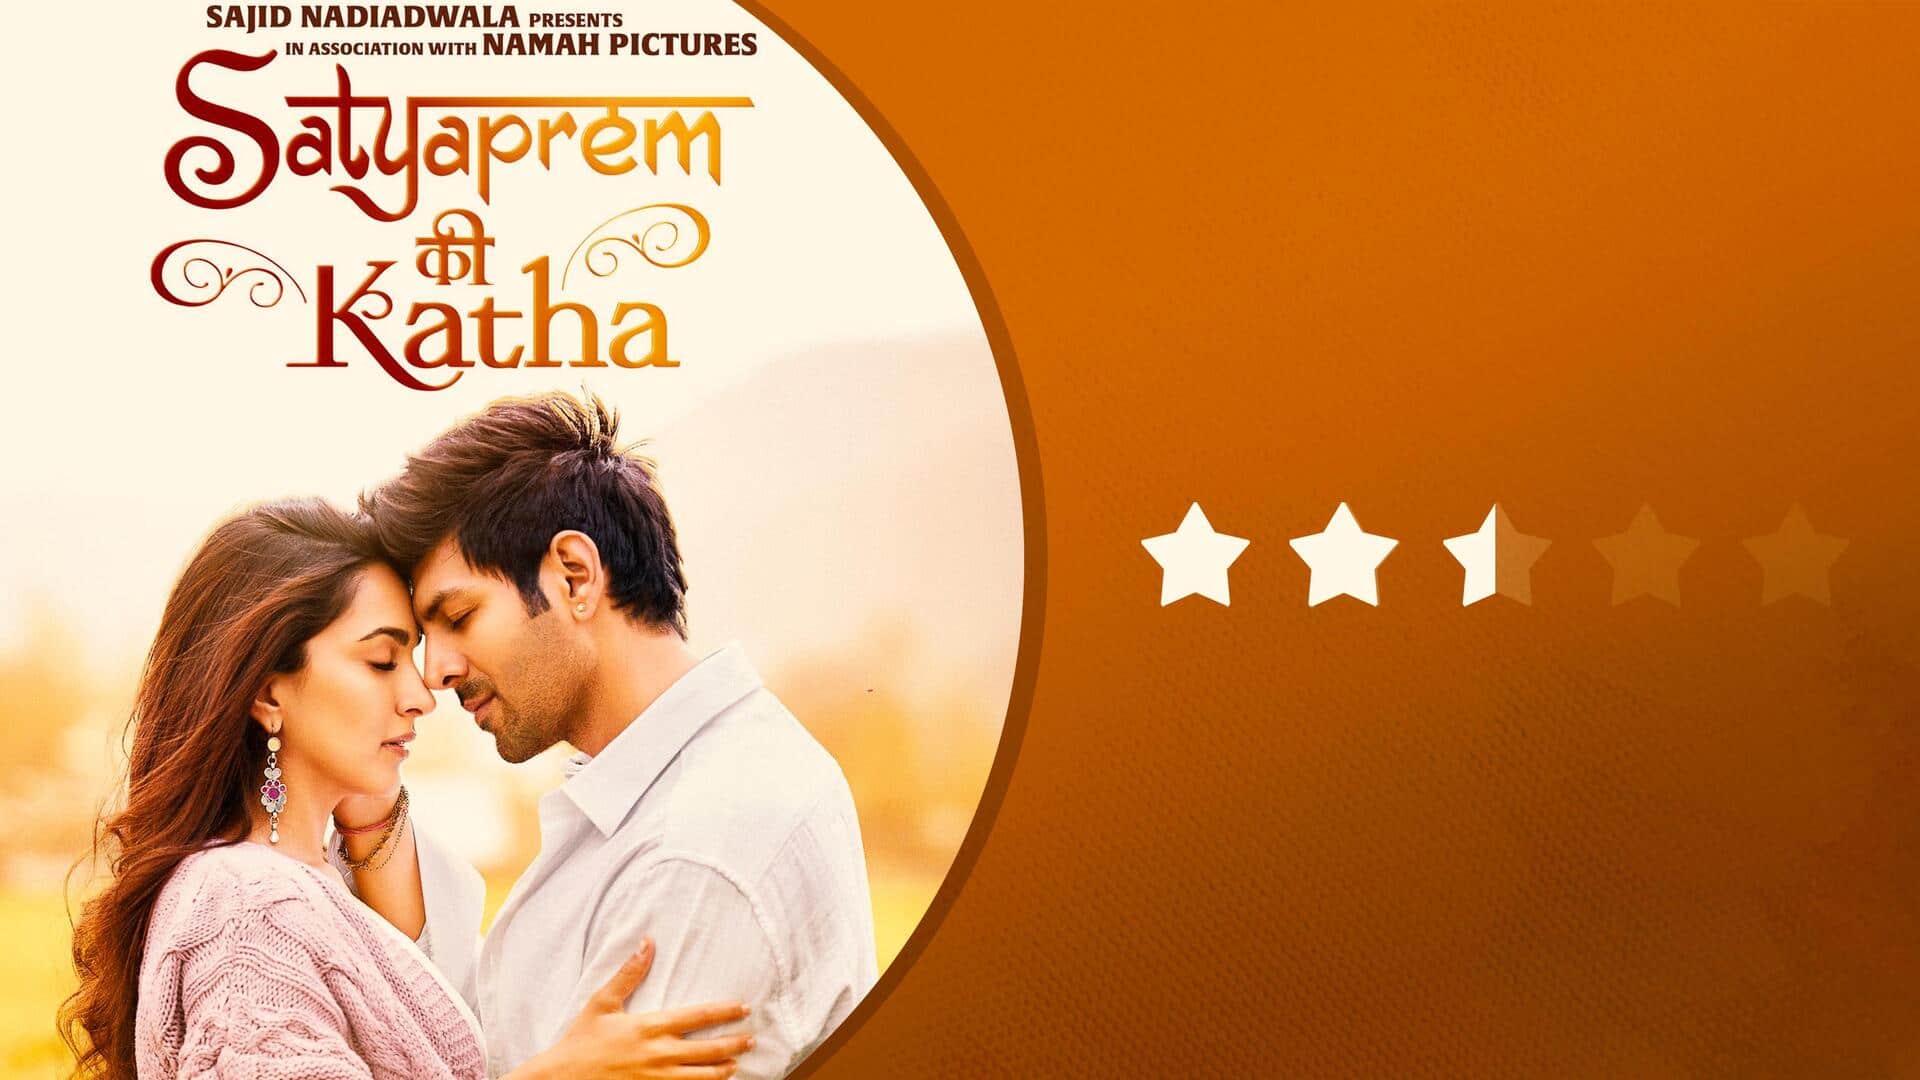 #SatyapremKiKatha review: Kiara Advani's 'Katha' is the real star here